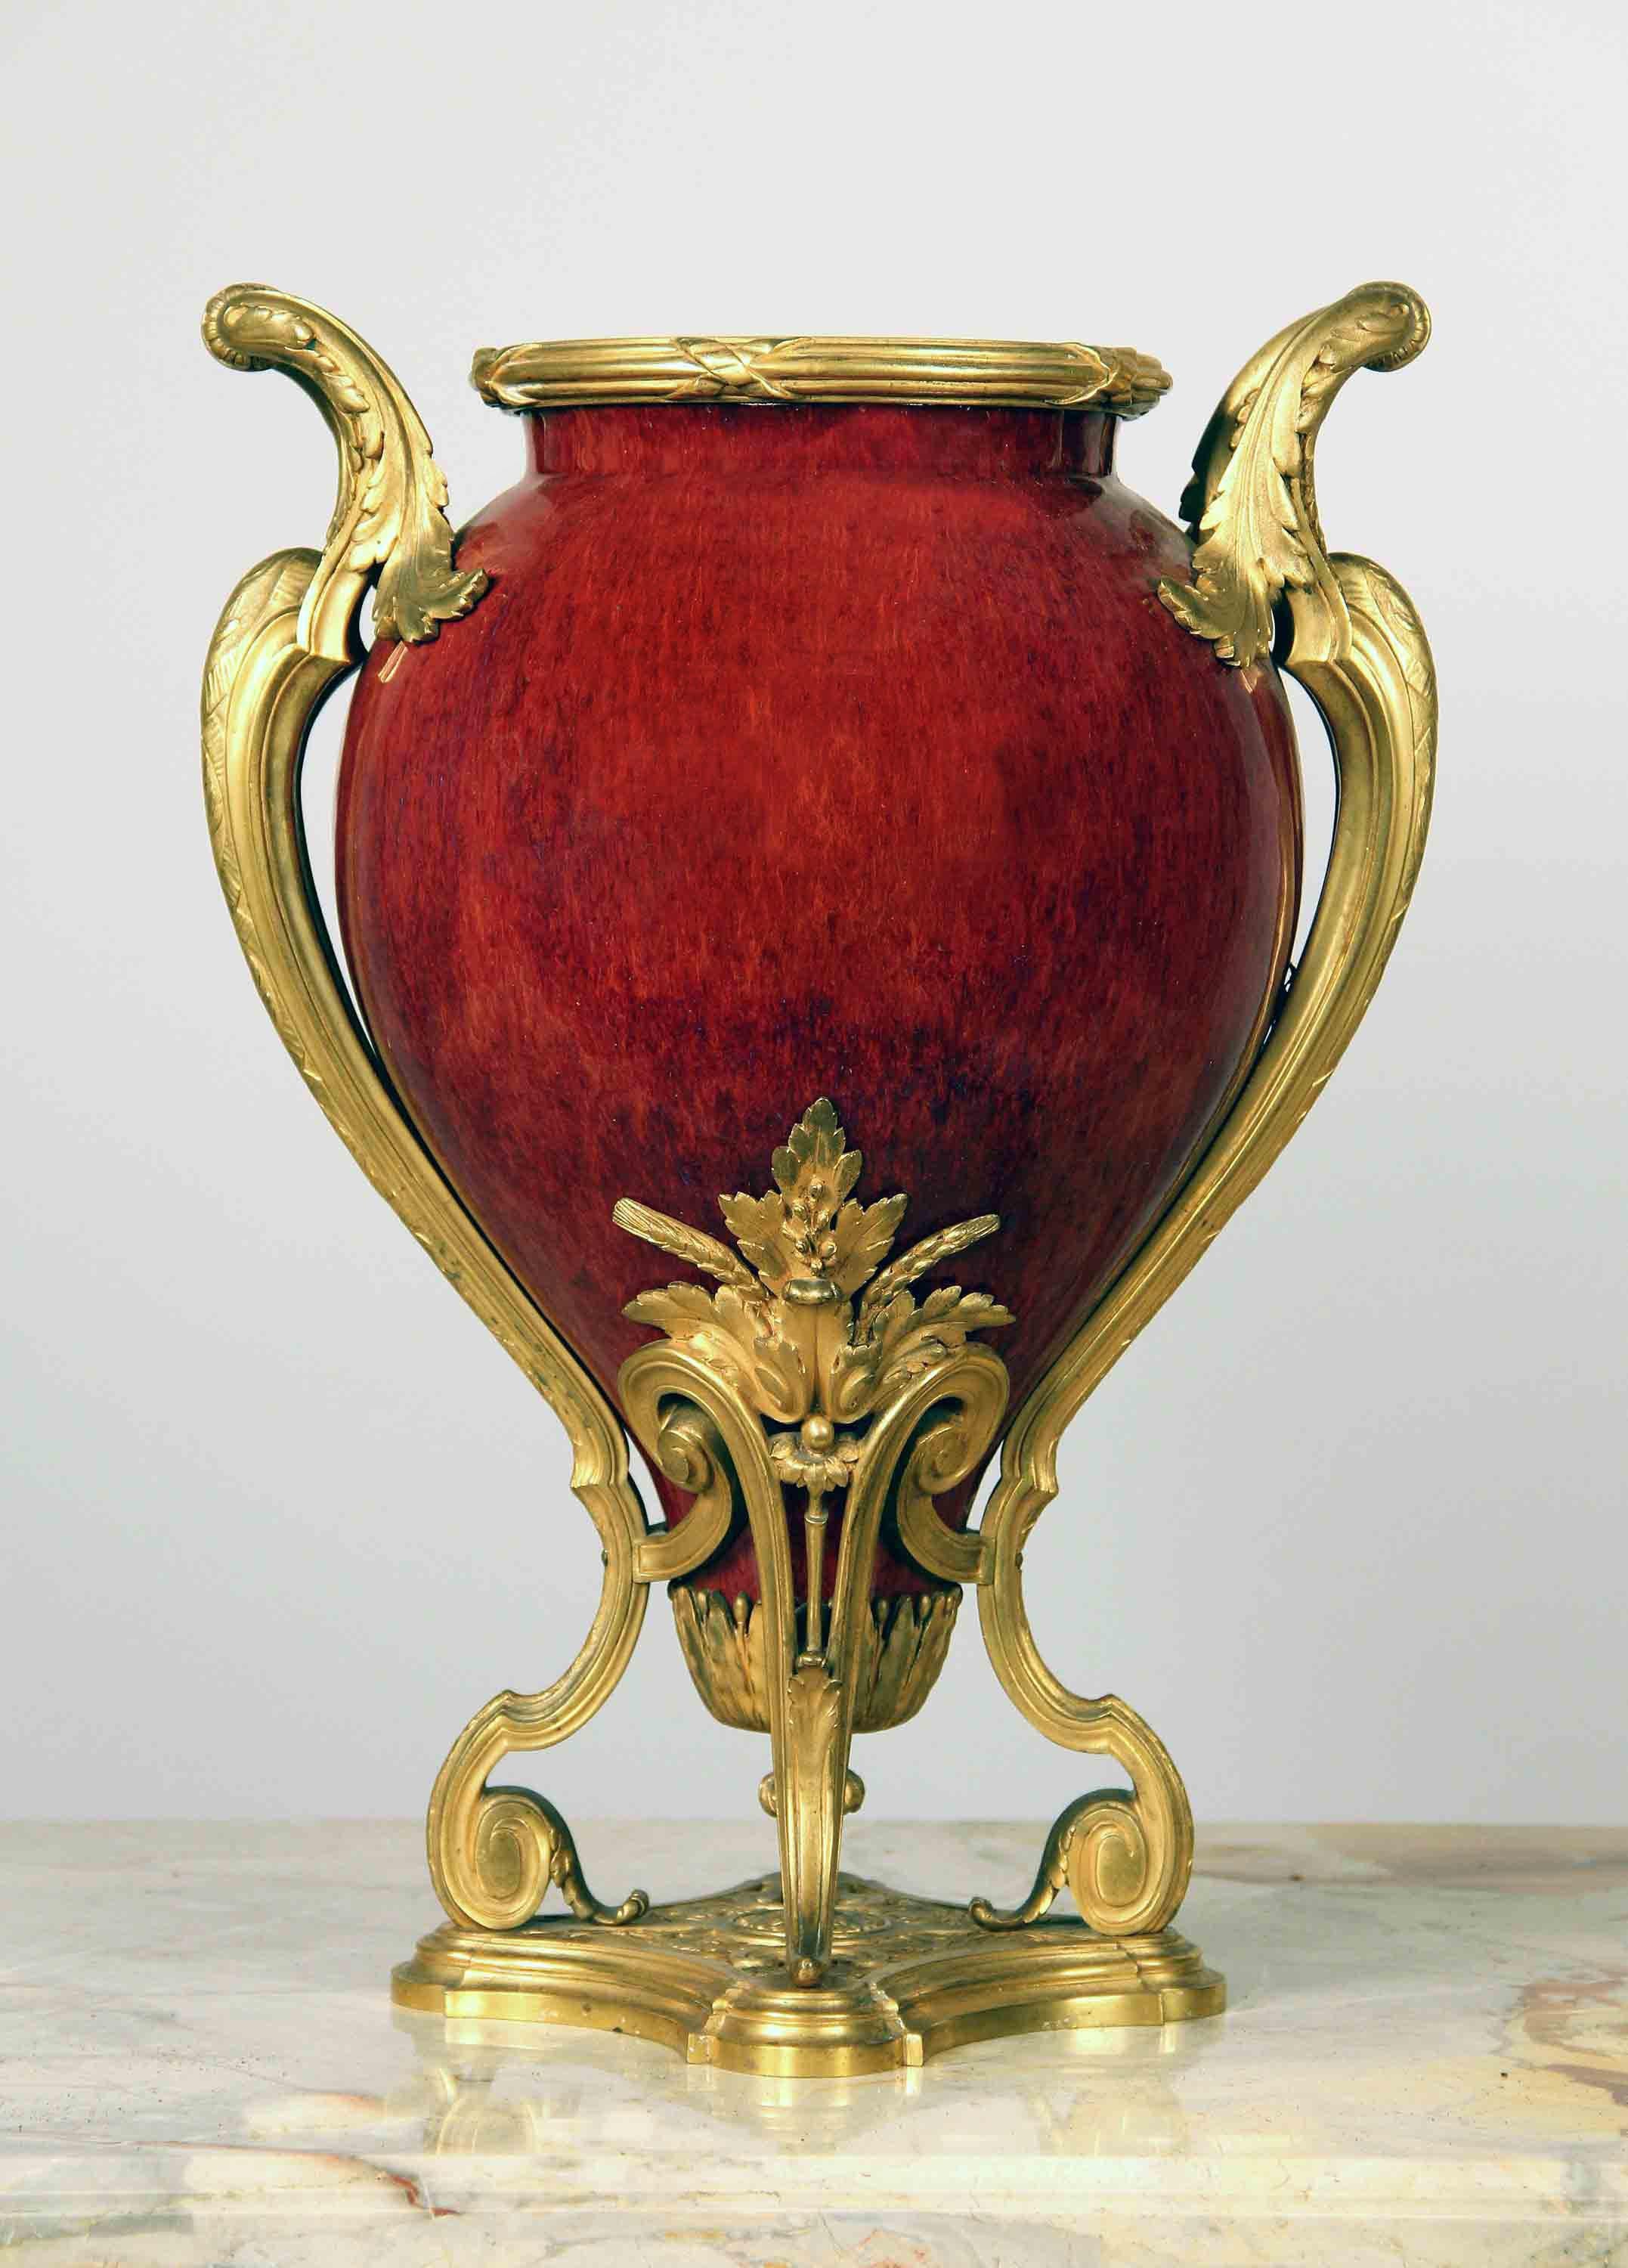 Très beau centre de table en porcelaine monté en bronze doré de la fin du XIXe siècle

Magnifique 